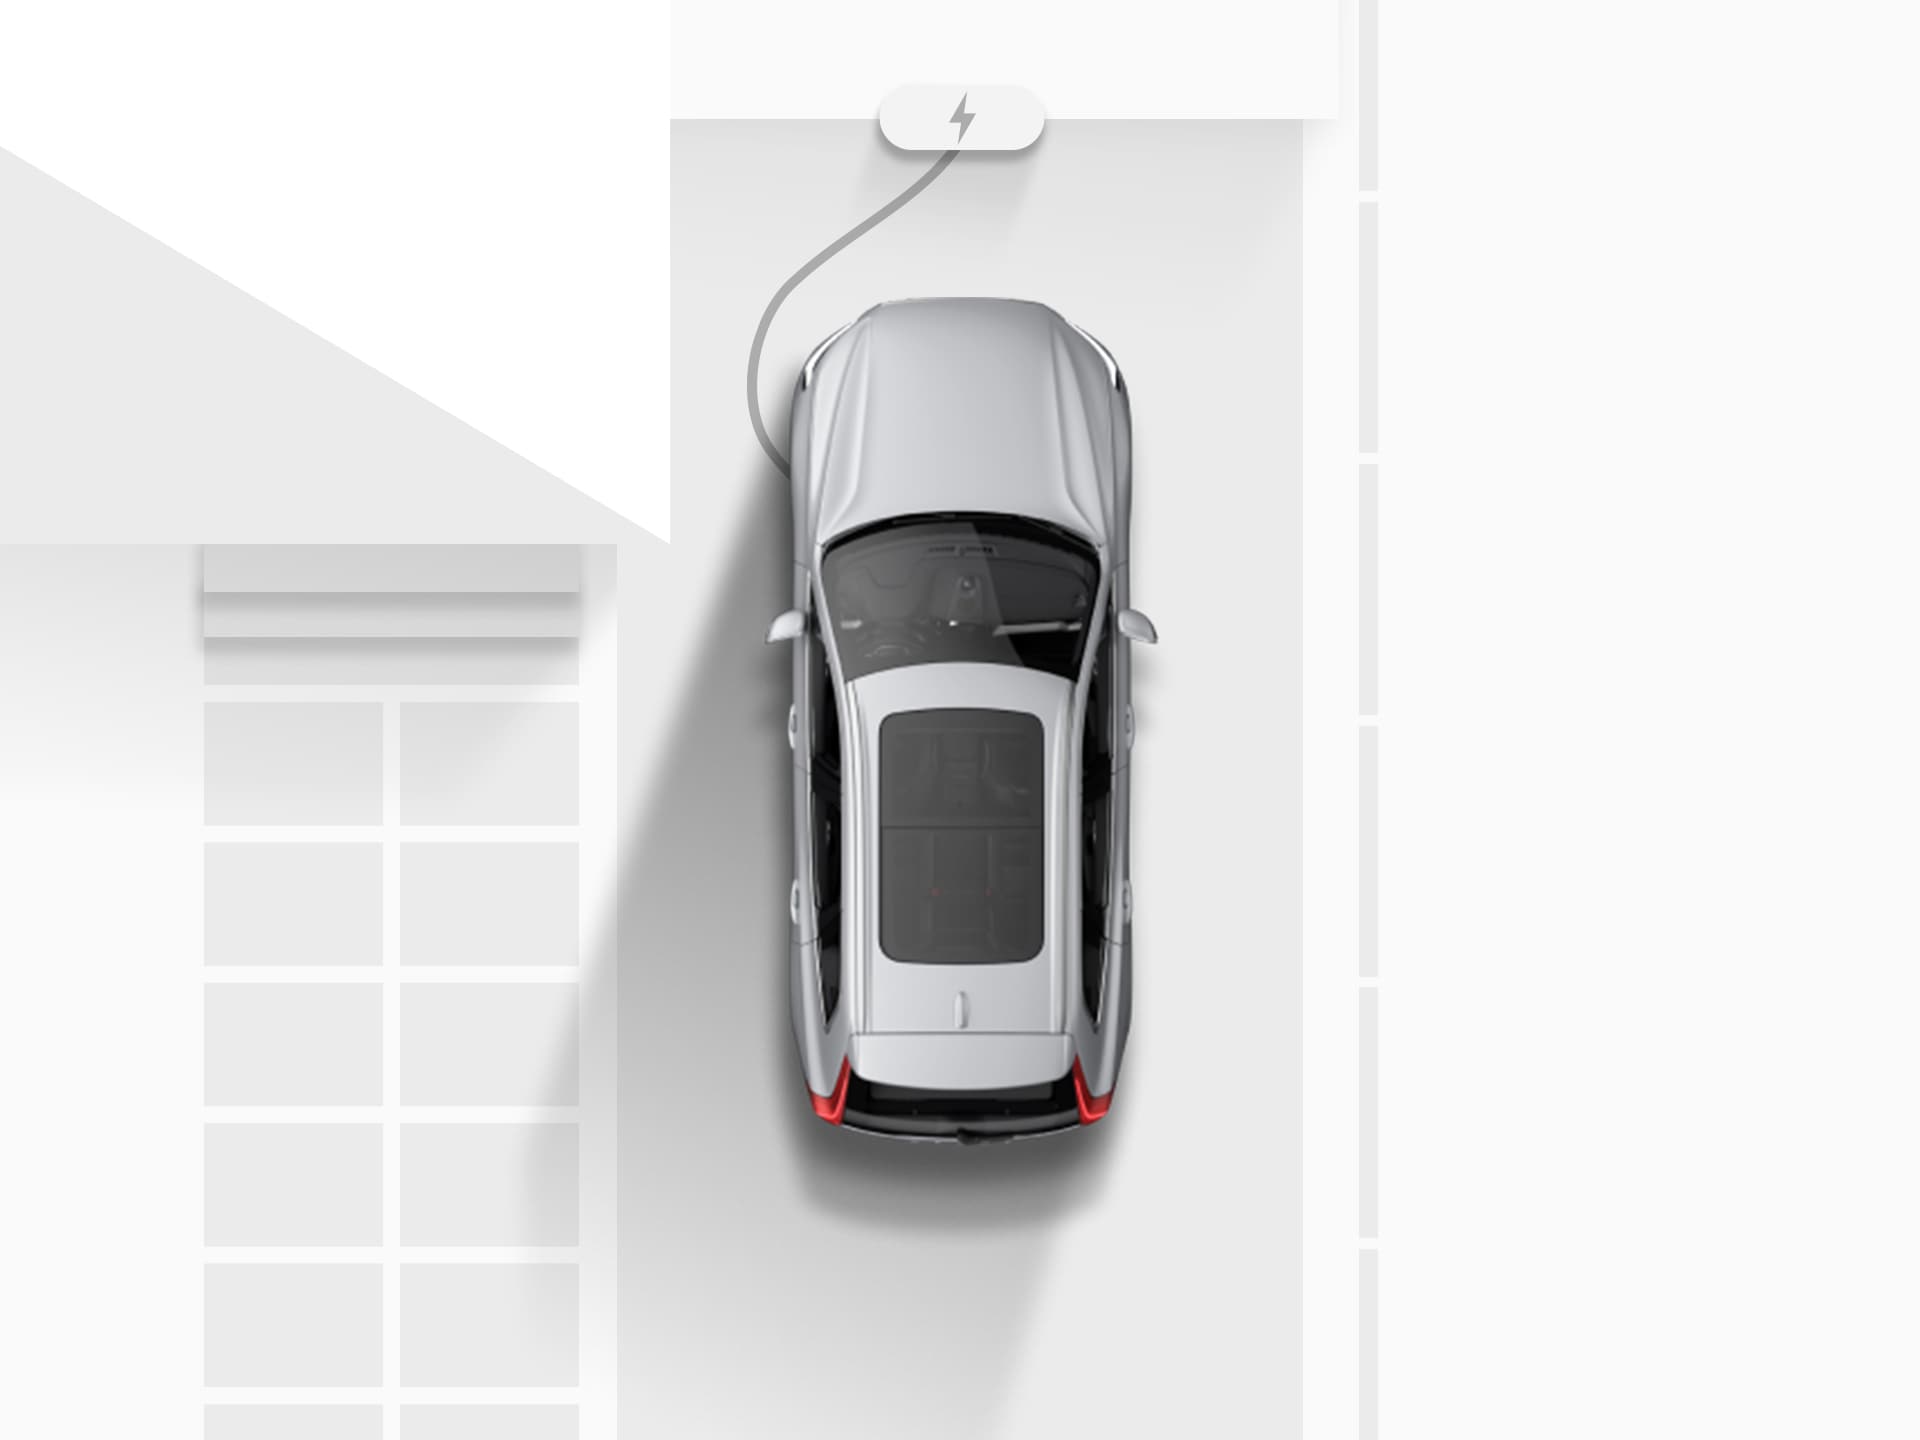 Plano general de un dibujo digital de un SUV Volvo XC40 Recharge totalmente eléctrico plateado enchufado y cargándose en la entrada de una casa.